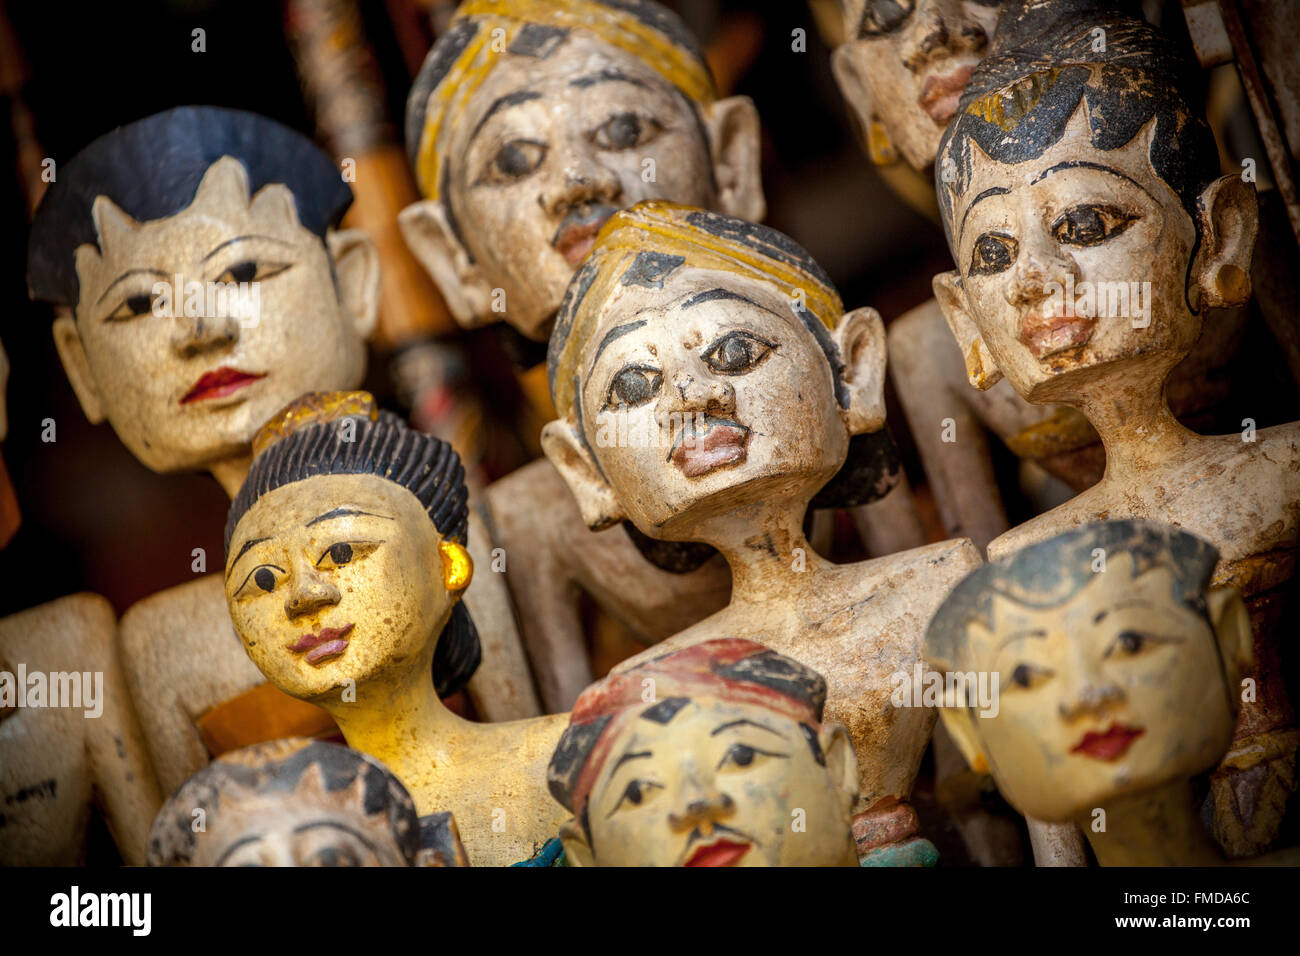 Chefs de figures en bois, temple danseurs dans un bazar à Ubud, Bali, Indonésie Banque D'Images